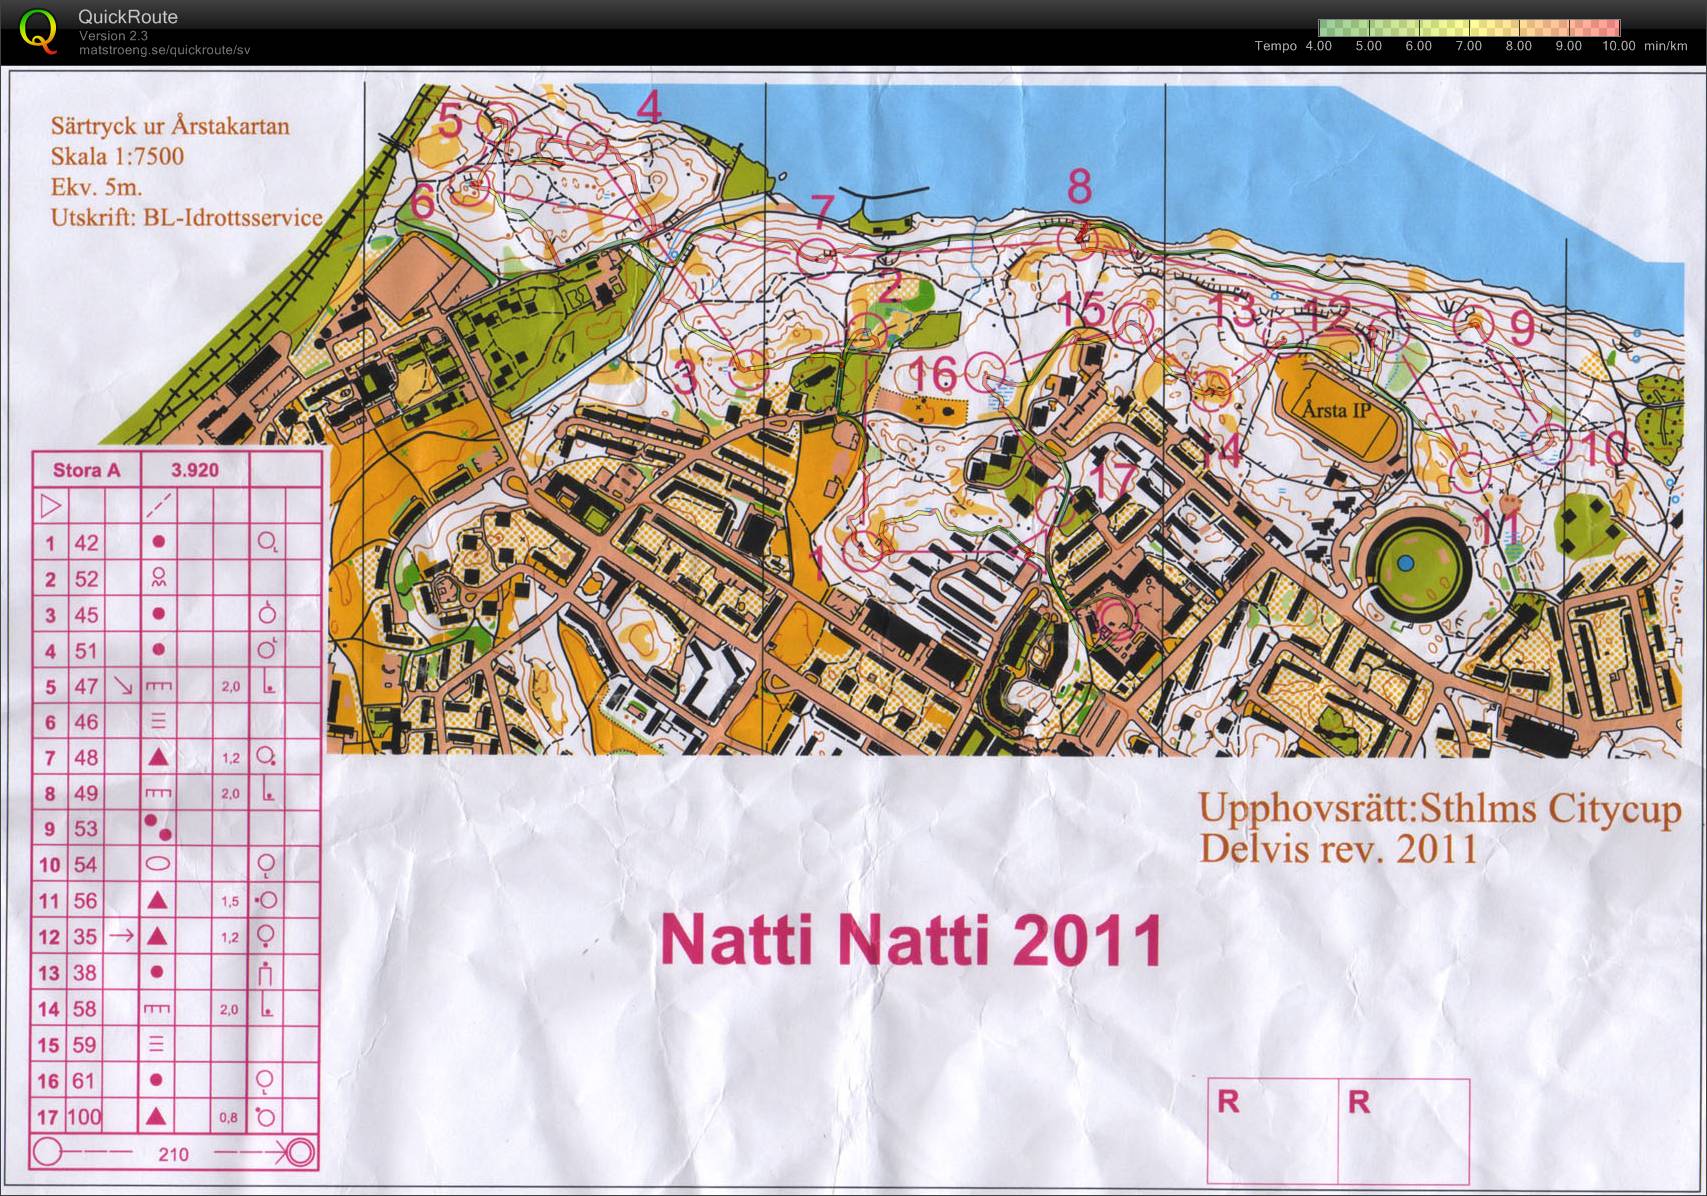 Natti Natti (28-09-2011)